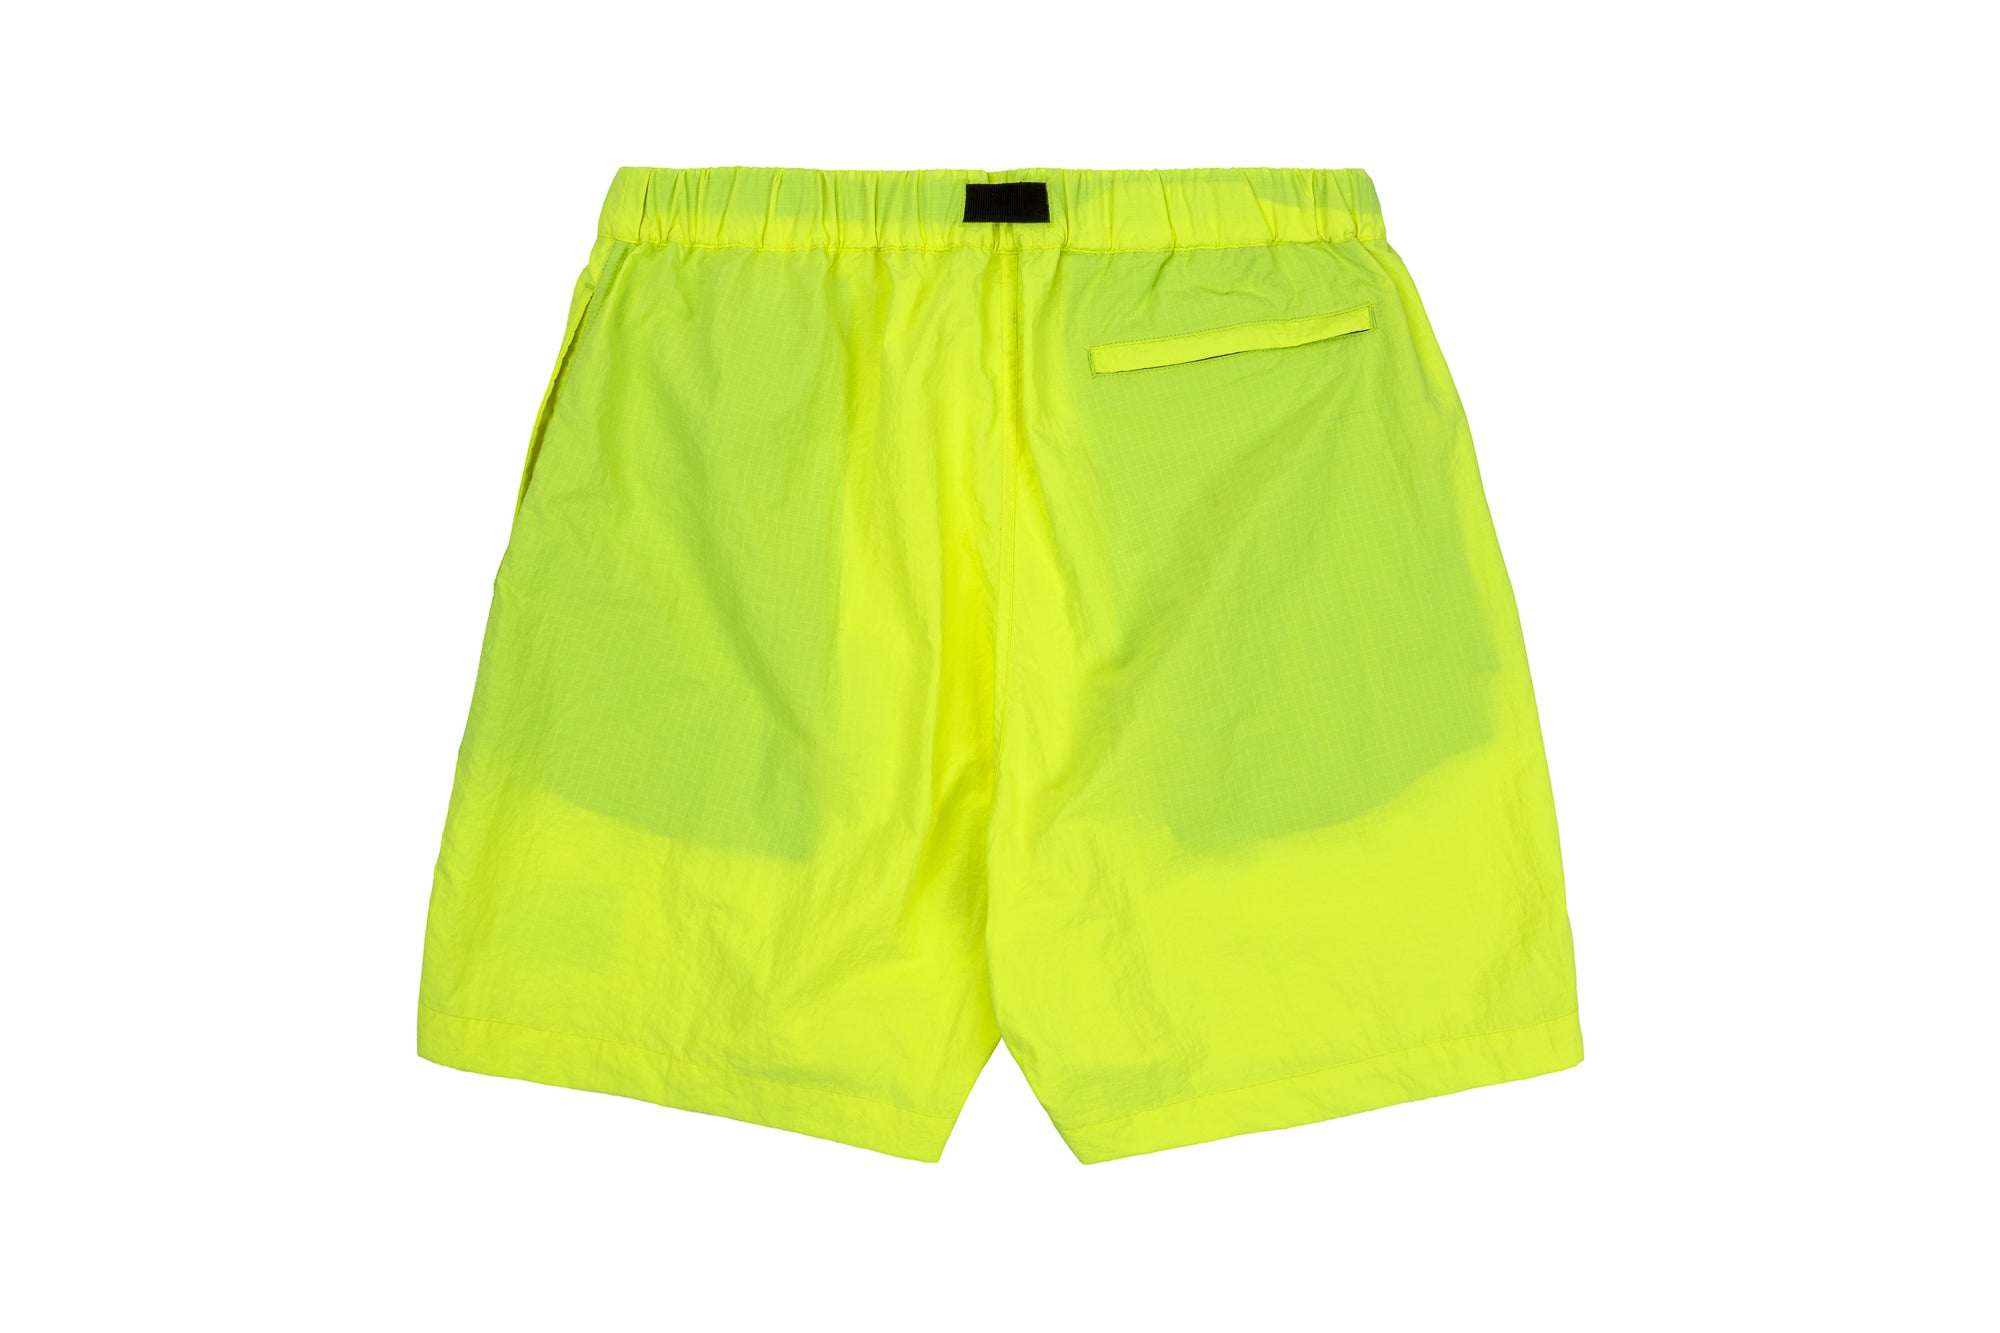 AT Shorts Neon Yellow